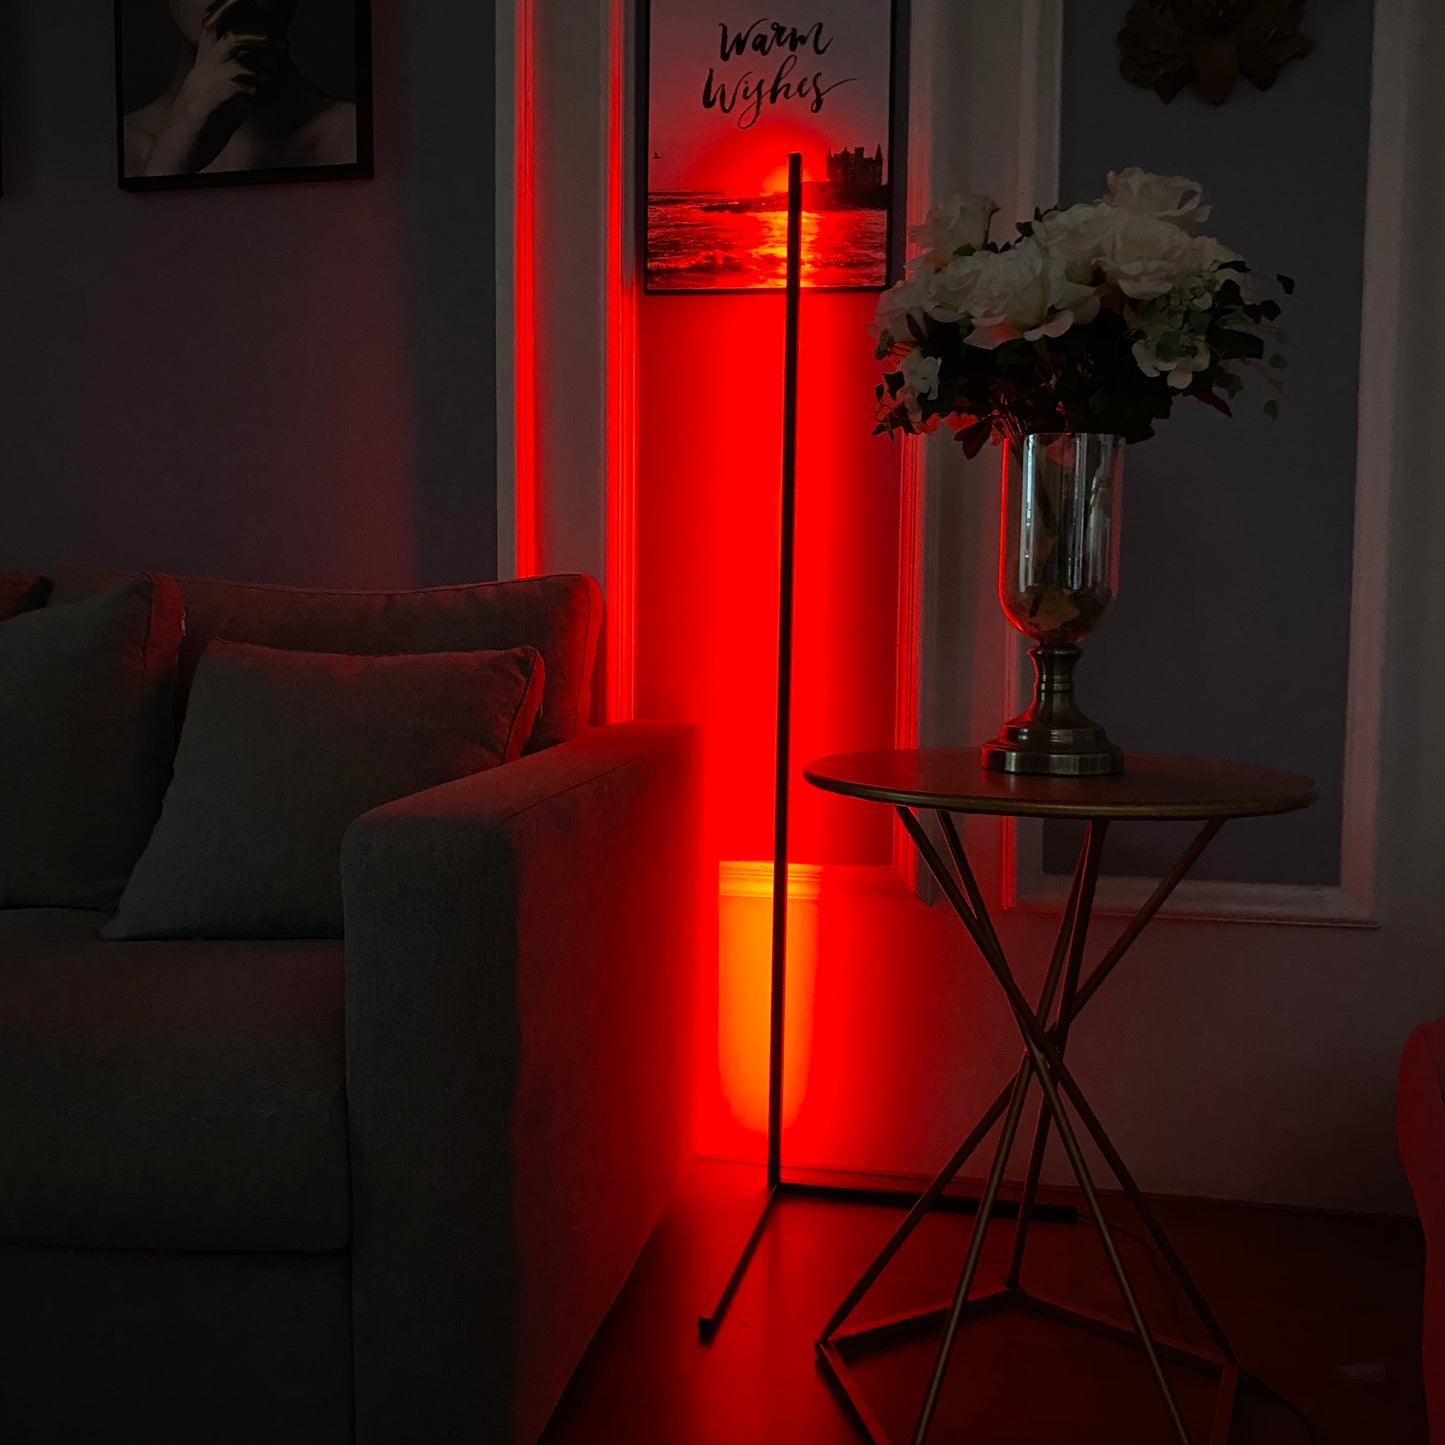 "RGB Floor Lamp" with Smart remote - Northernlightstore - neon lights